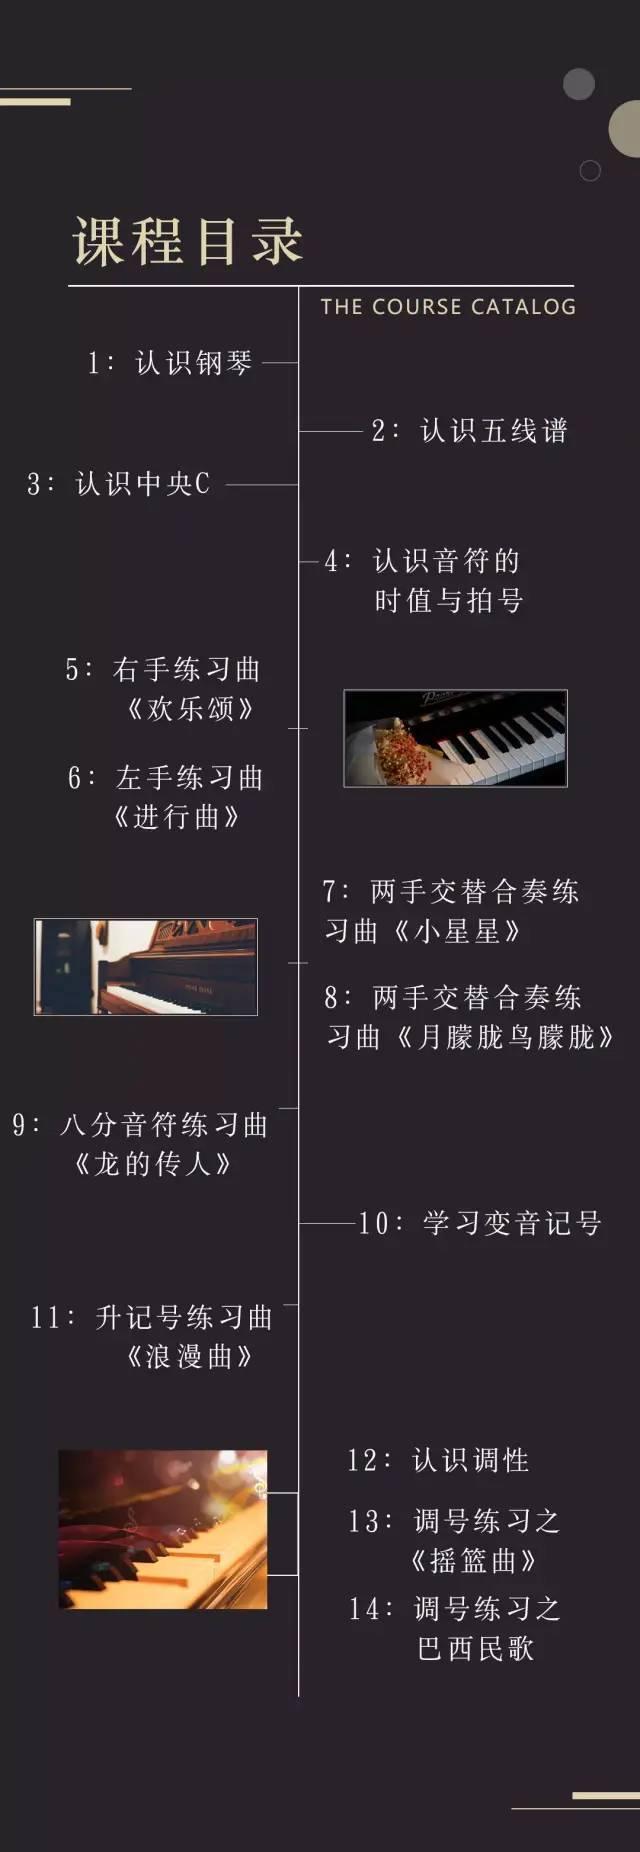 【文化云】梅县区文化馆-以艺治疫·文化慕课之第六讲：90分钟教你弹钢琴